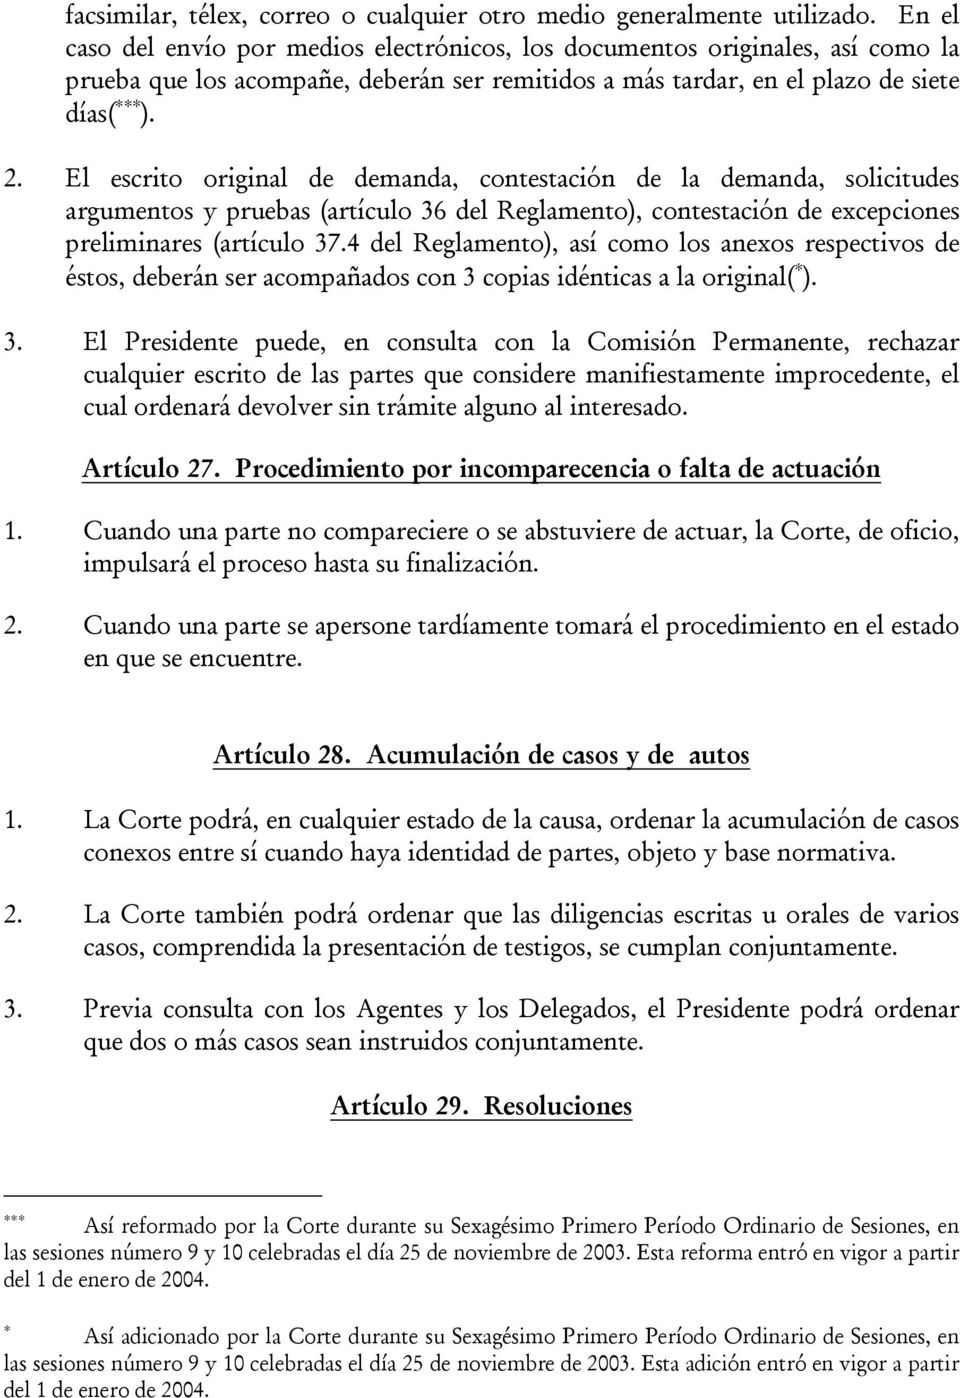 El escrito original de demanda, contestación de la demanda, solicitudes argumentos y pruebas (artículo 36 del Reglamento), contestación de excepciones preliminares (artículo 37.